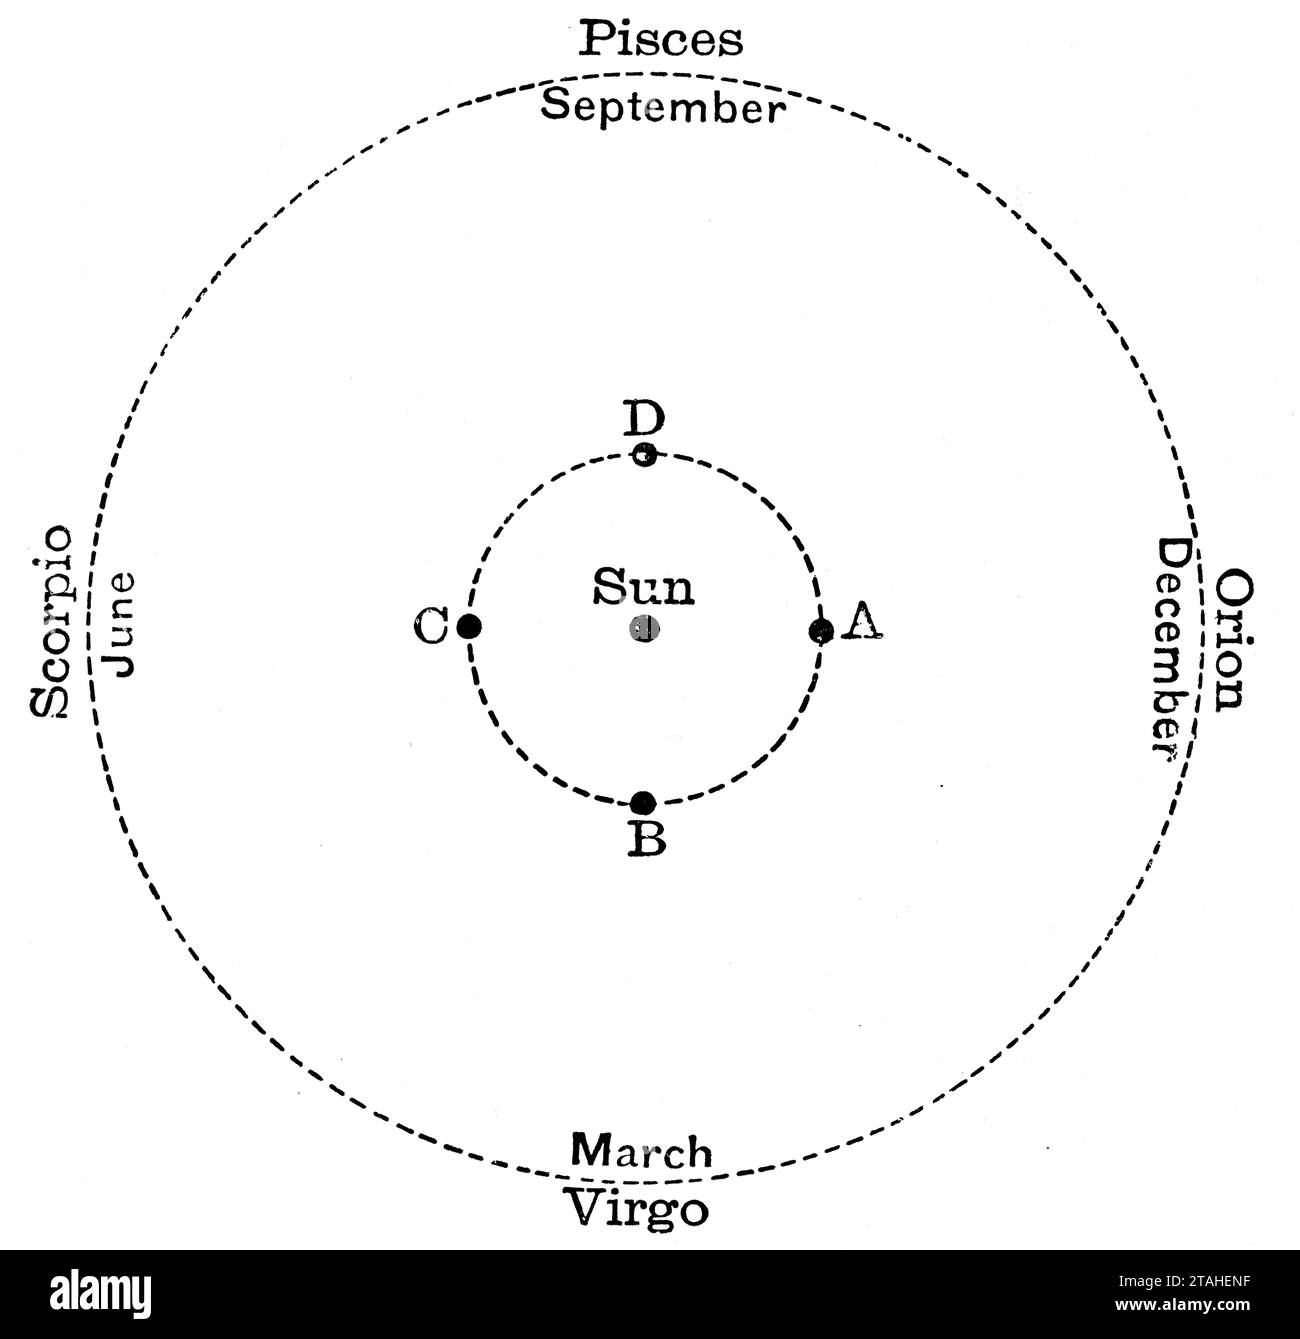 Un diagrama que muestra el viaje de doce meses de la Tierra alrededor del sol, 1889. Posición 'A' que indica la posición de la Tierra a mediados del invierno. Foto de stock